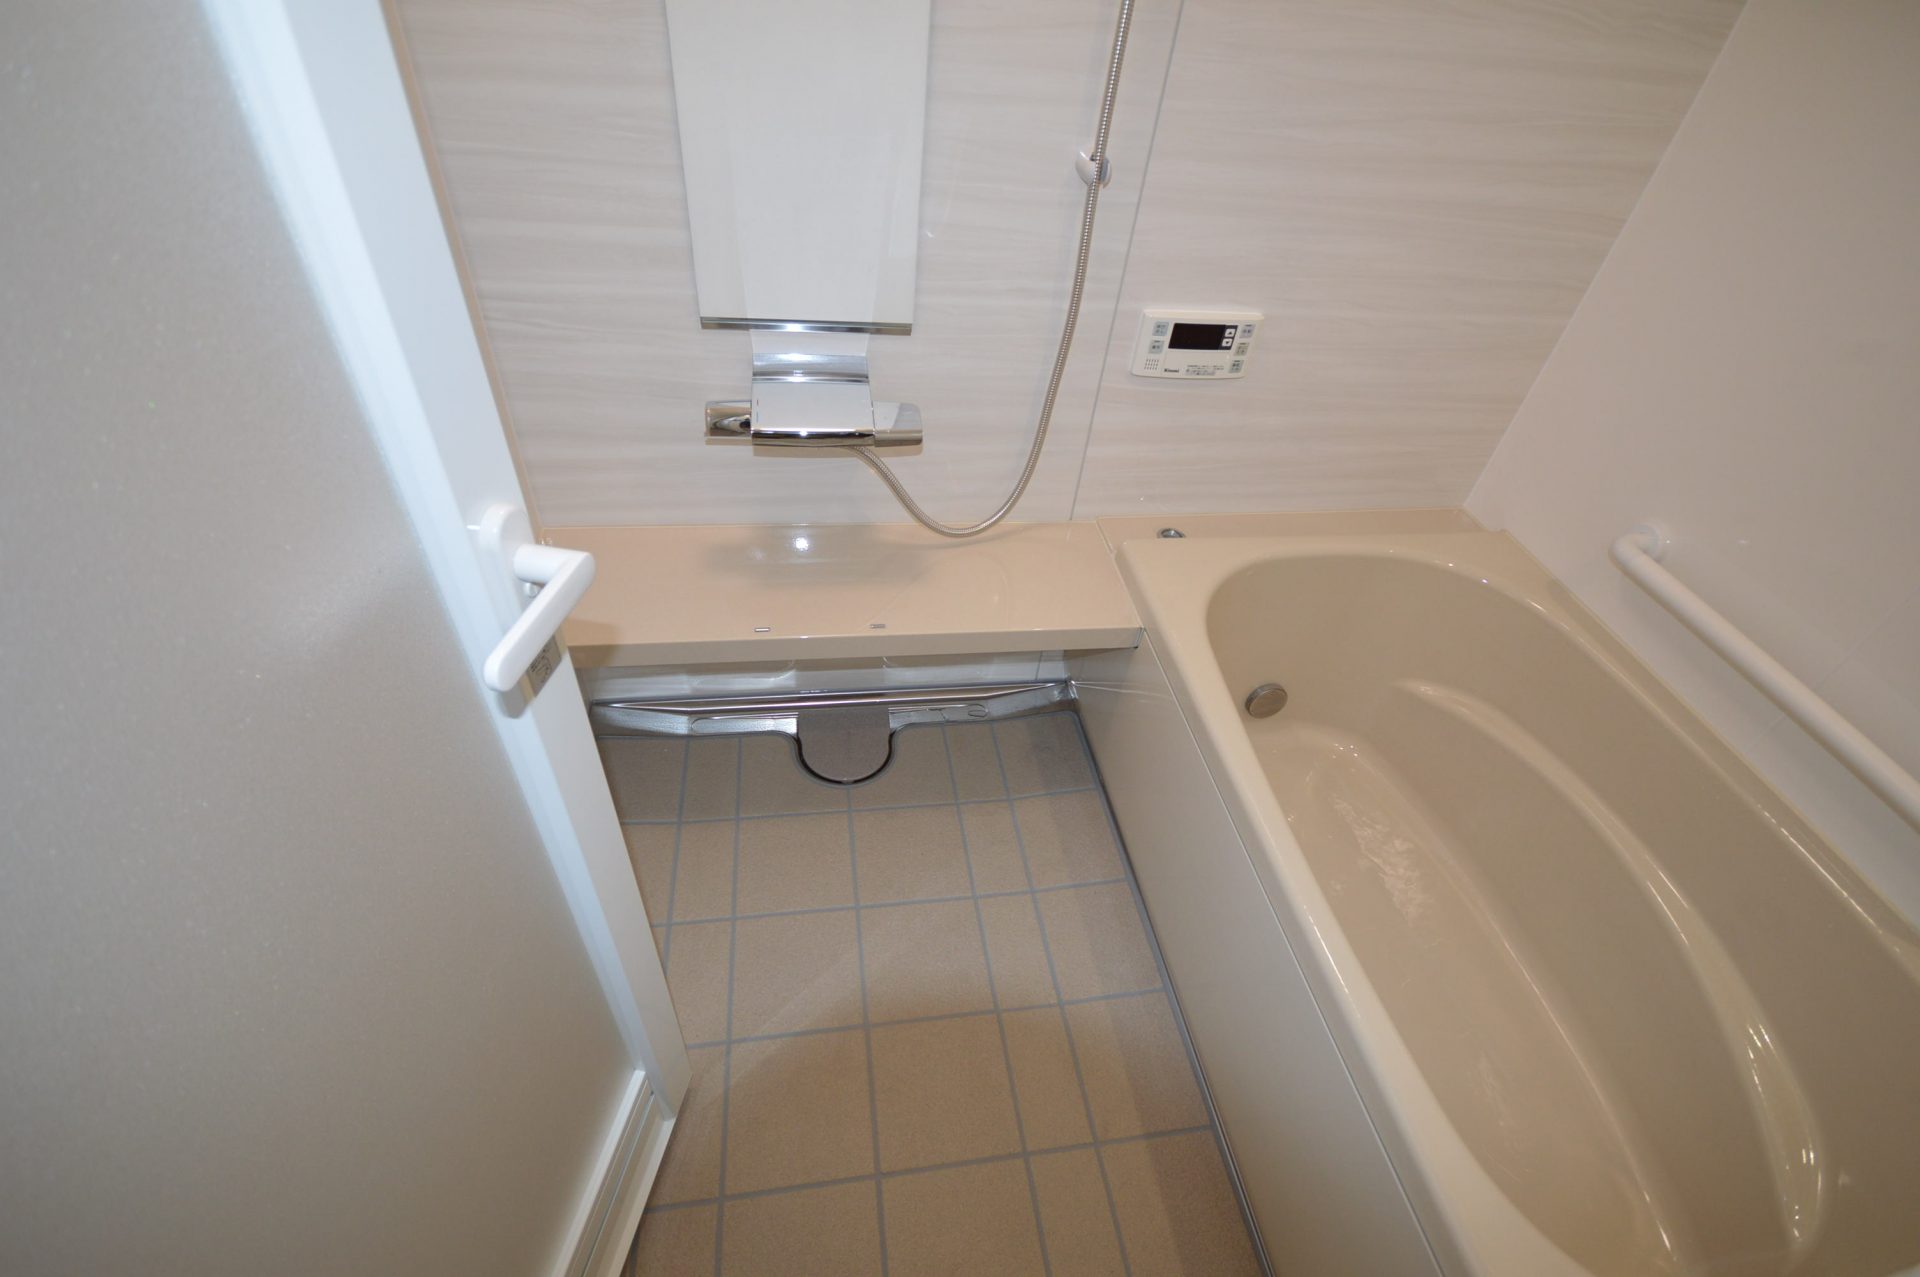 after ： 傷や汚れが付きにくいホーロー製浴室パネルと磁器タイルの組み合わせ。<br/>壁のお手入れは入浴後にサッとシャワーで流すだけ。